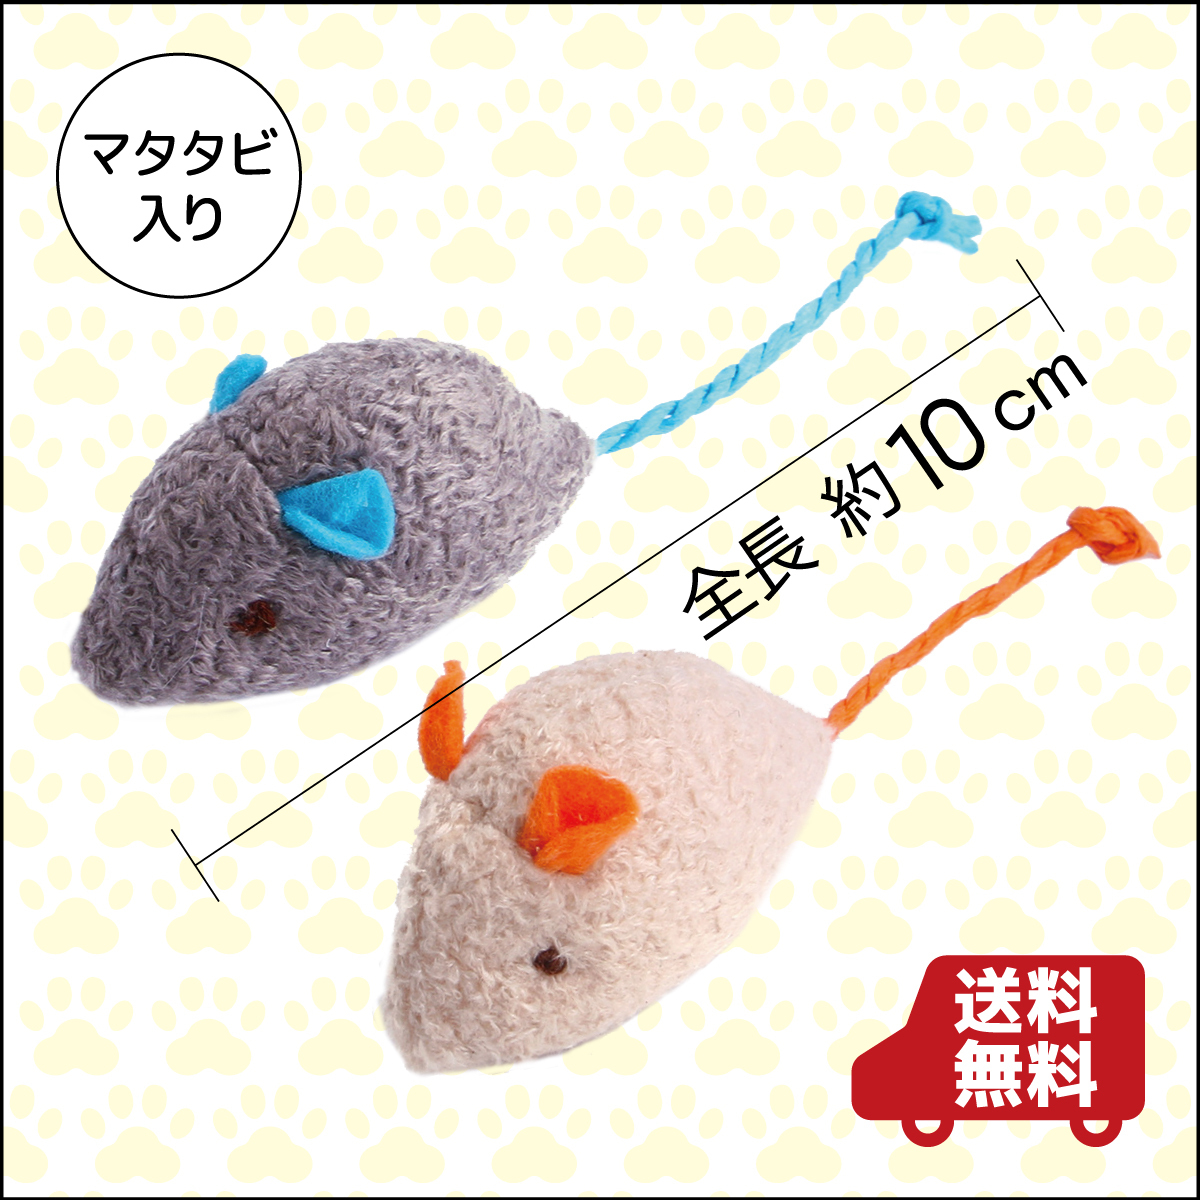  кошка игрушка мягкая игрушка matatabi входить мышь 2 шт. комплект 